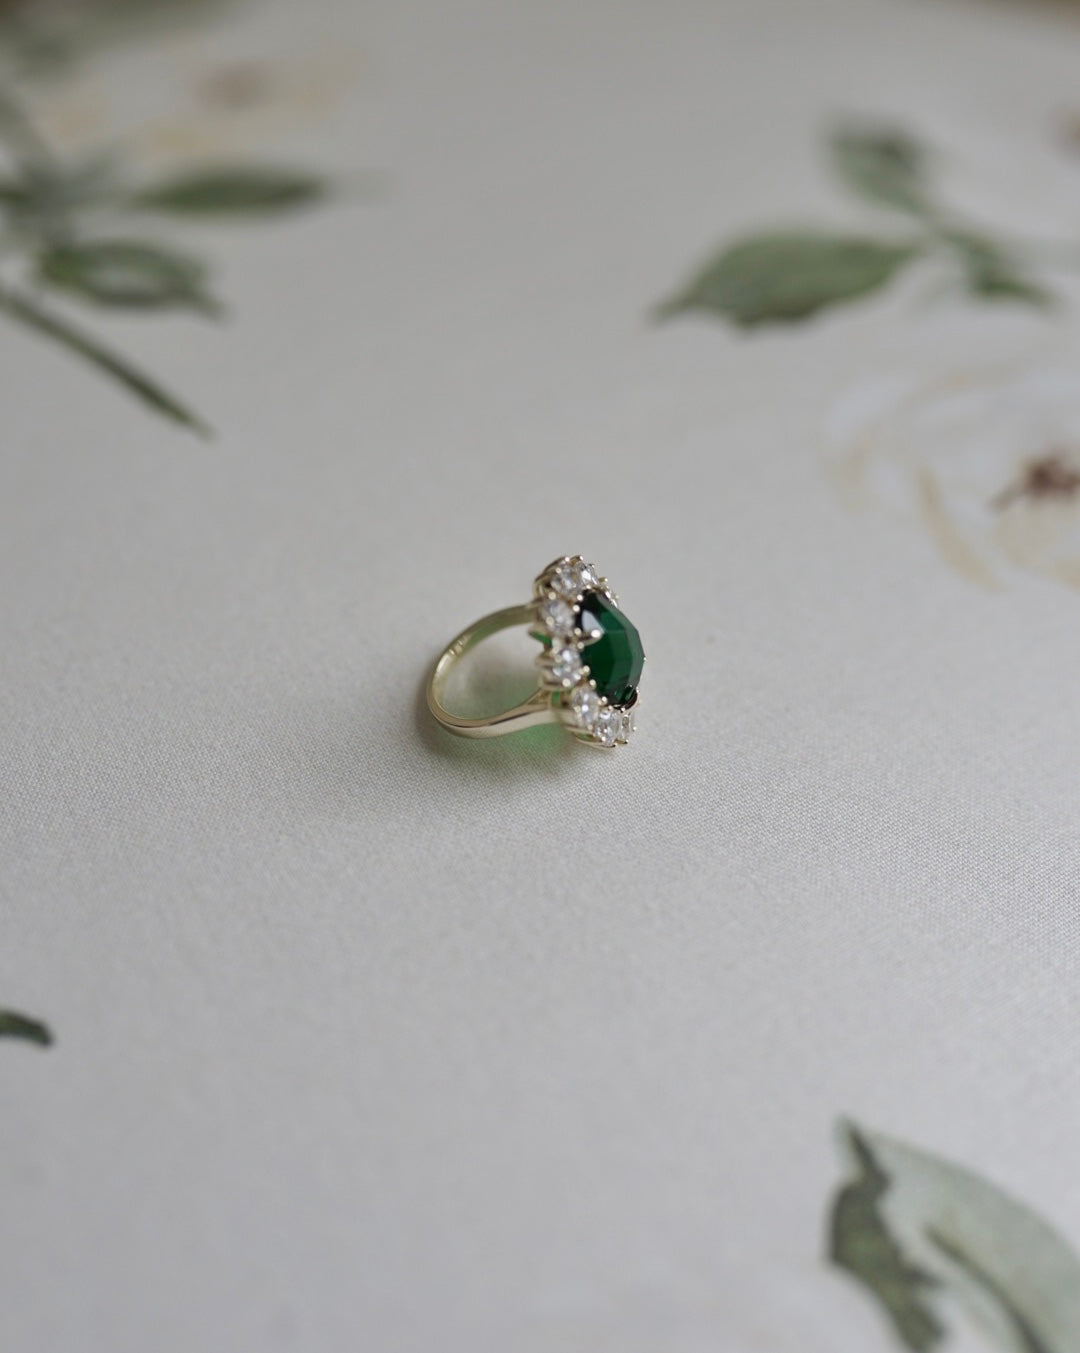 costco | Accessories | 4kt White Gold Emerald And Diamond Pendant | Poshmark